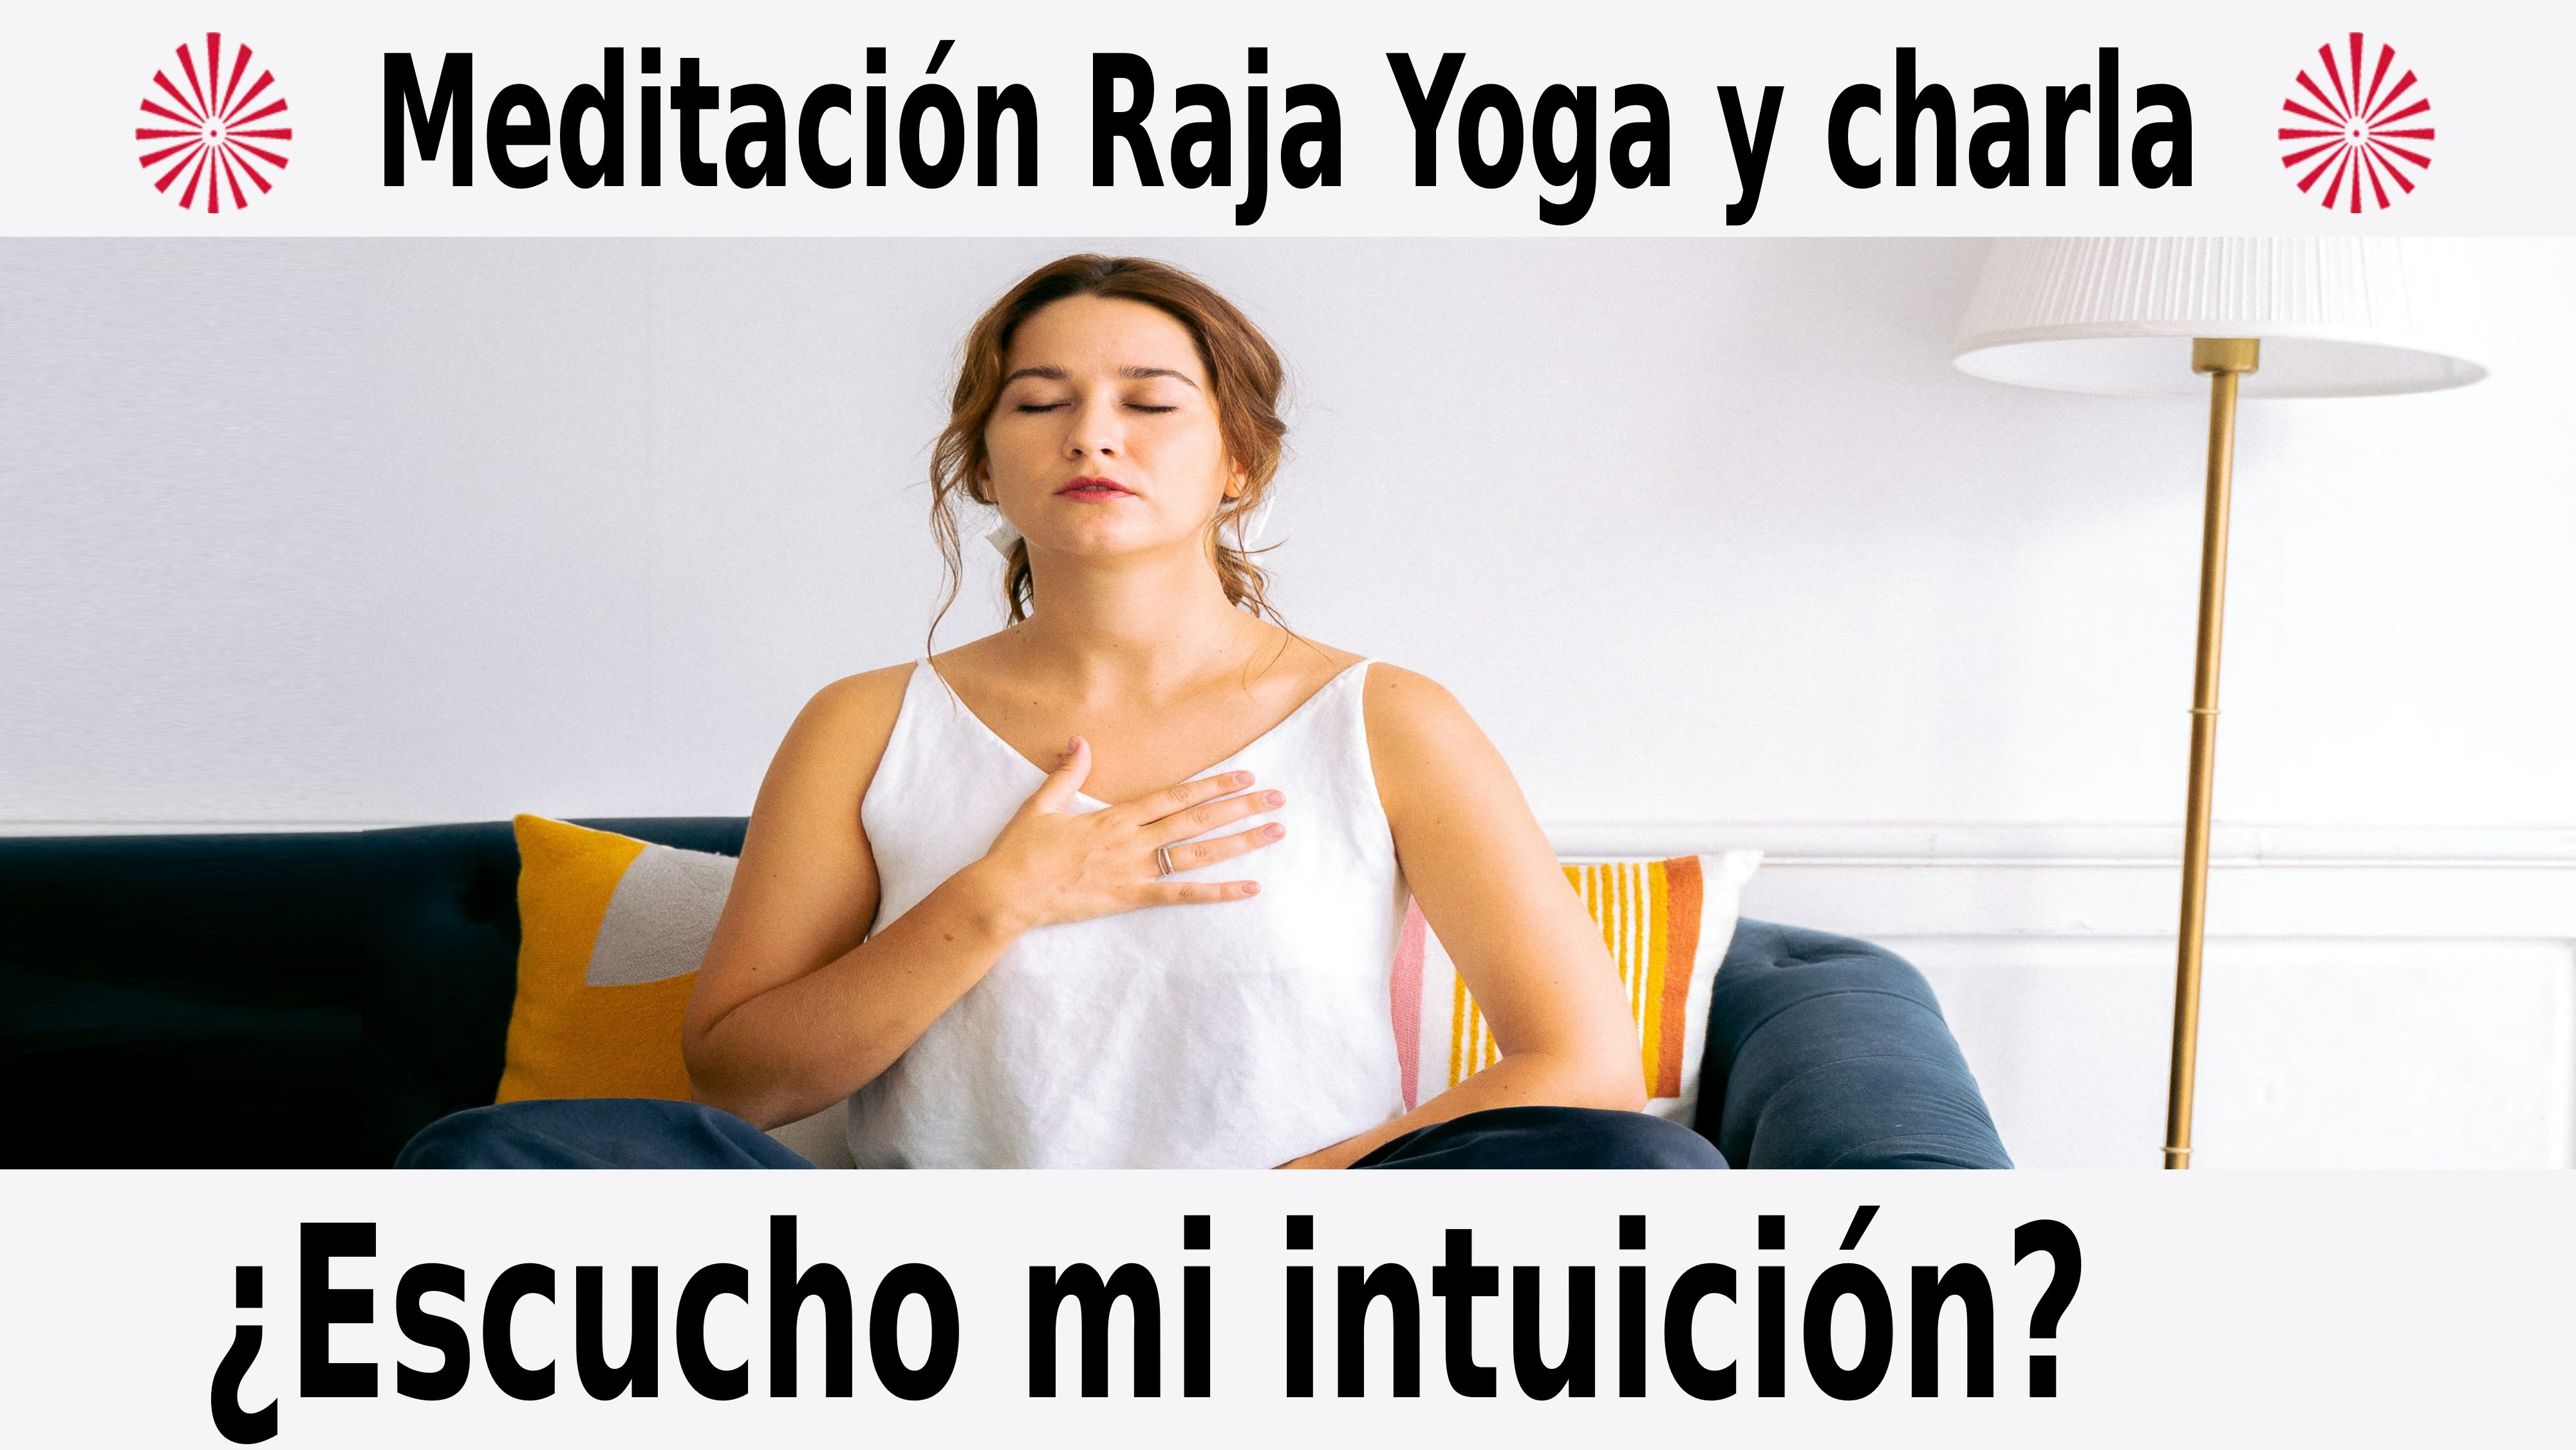 Meditación Raja Yoga y charla ¿Escucho mi intuición? (23 Diciembre 2020) On-line desde Sevilla